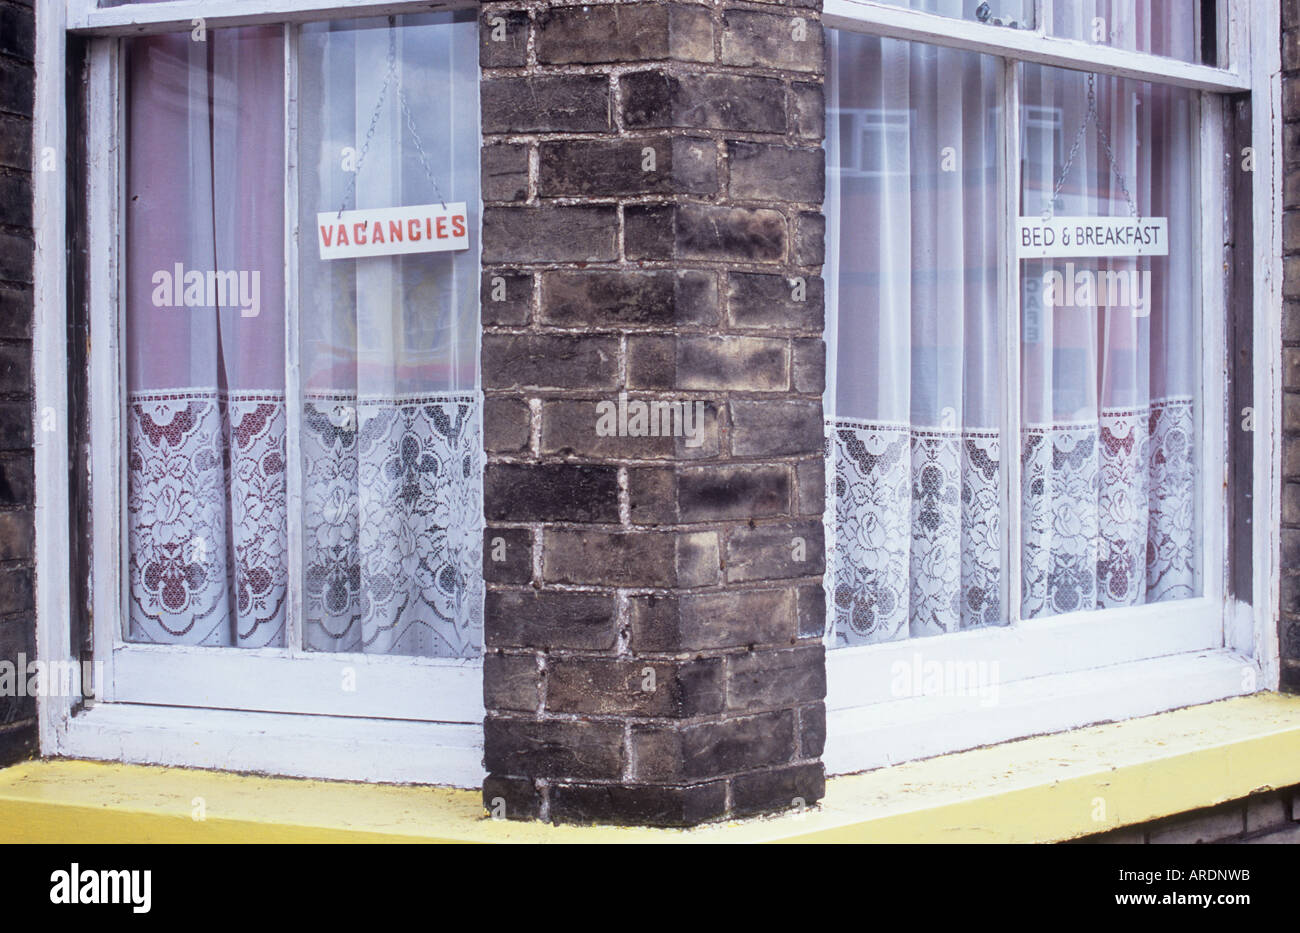 Close up de fenêtres à guillotine avec briques sales sales contenant des signes et des rideaux net Postes vacants et lit et petit déjeuner Banque D'Images